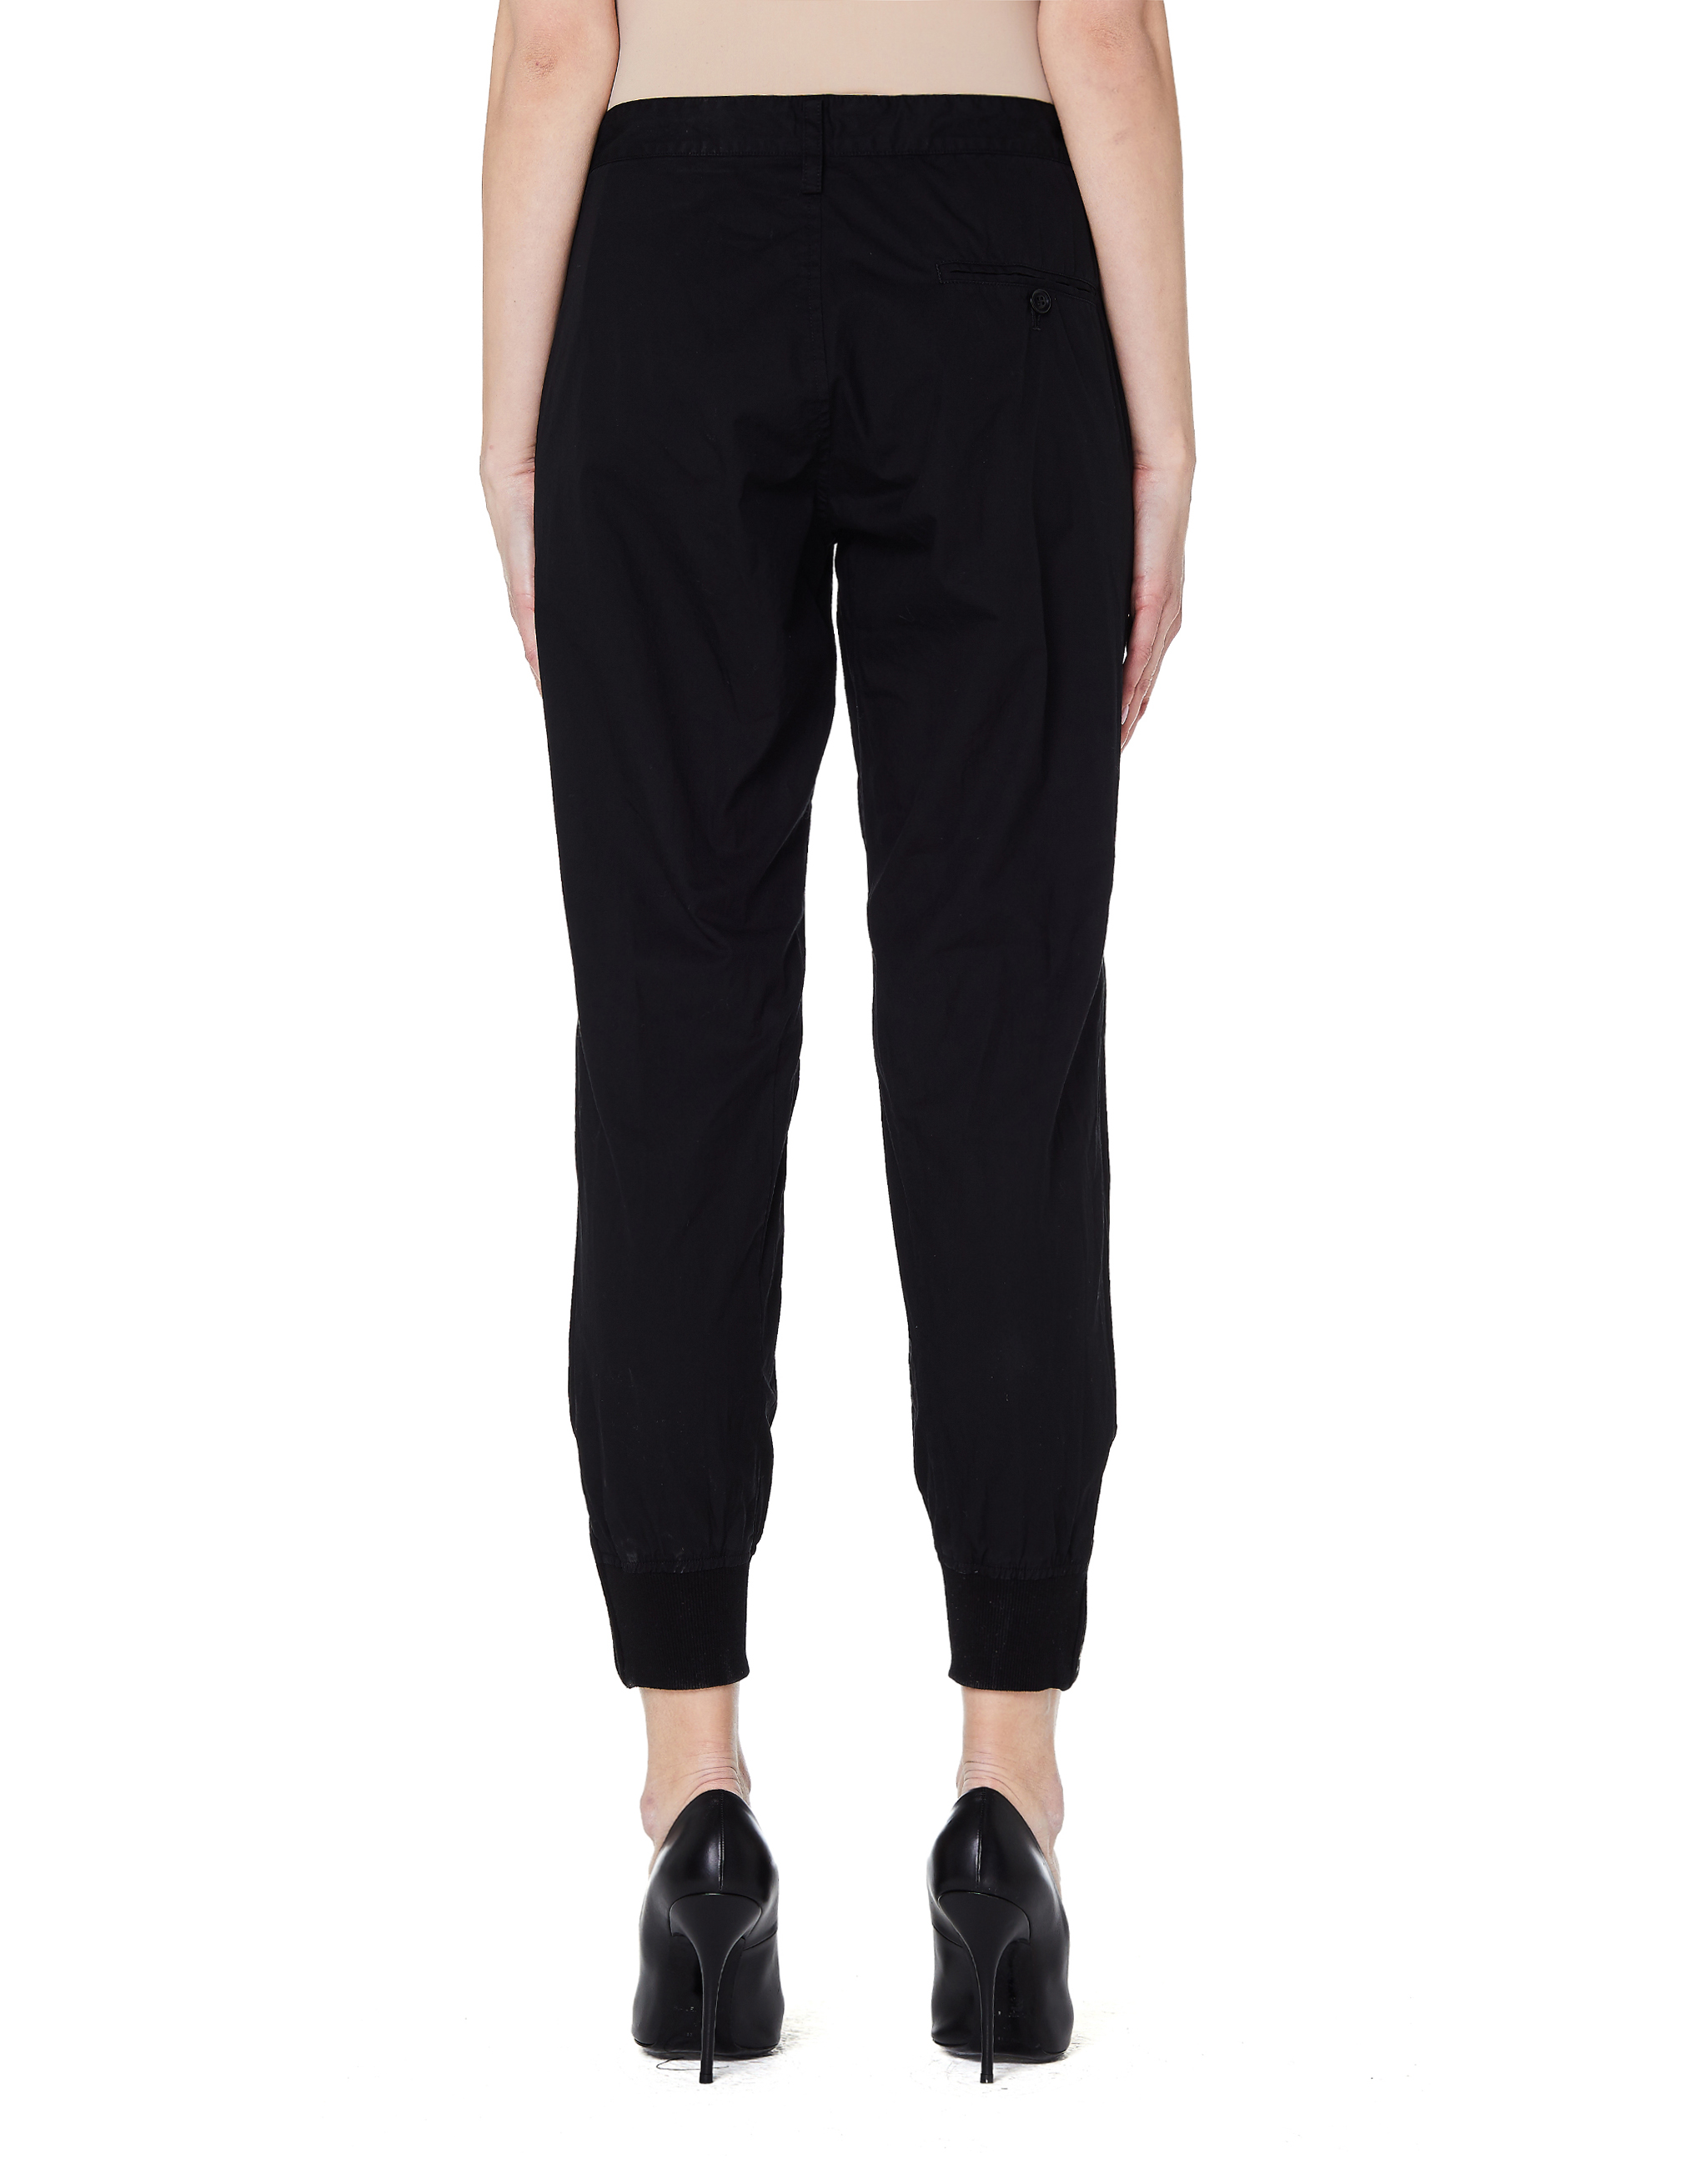 Черные хлопковые брюки с манжетами Ys YH-P04-004-4, размер 3 - фото 3